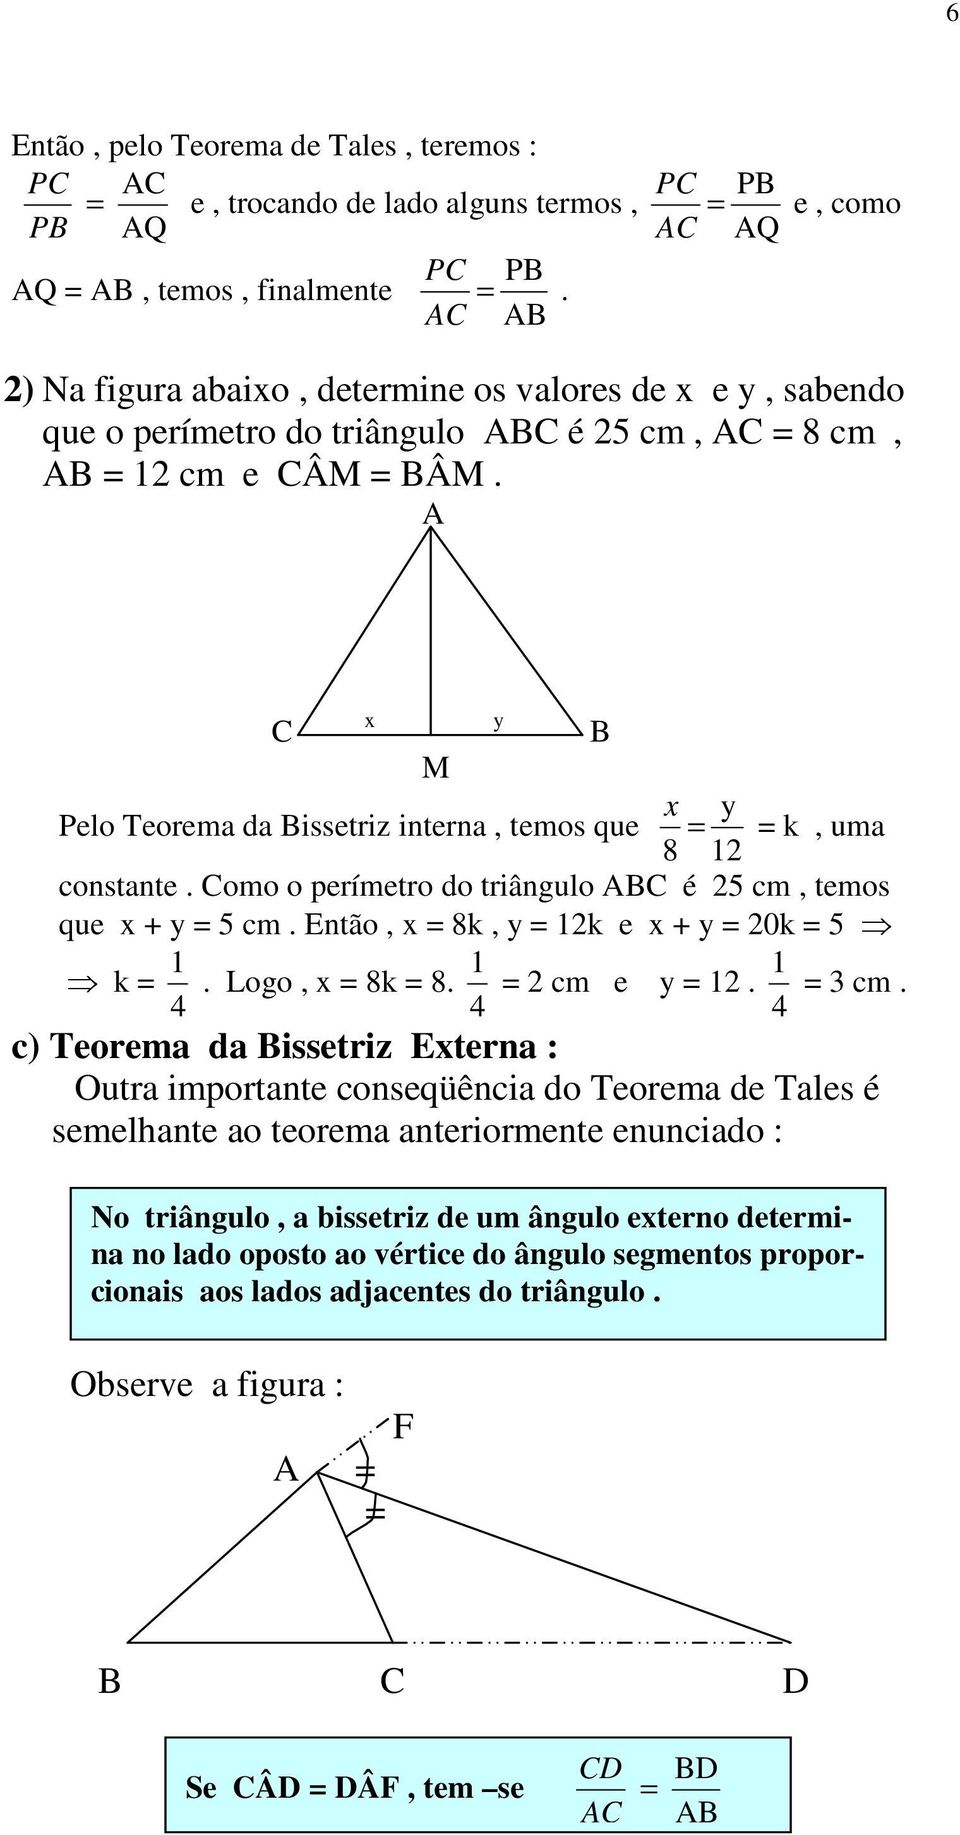 Pelo Teorema da issetriz interna, temos que x M y x 8 y 12 k, uma constante. omo o perímetro do triângulo é 25 cm, temos que x + y 5 cm. Então, x 8k, y 12k e x + y 20k 5 k 4 1. Logo, x 8k 8.